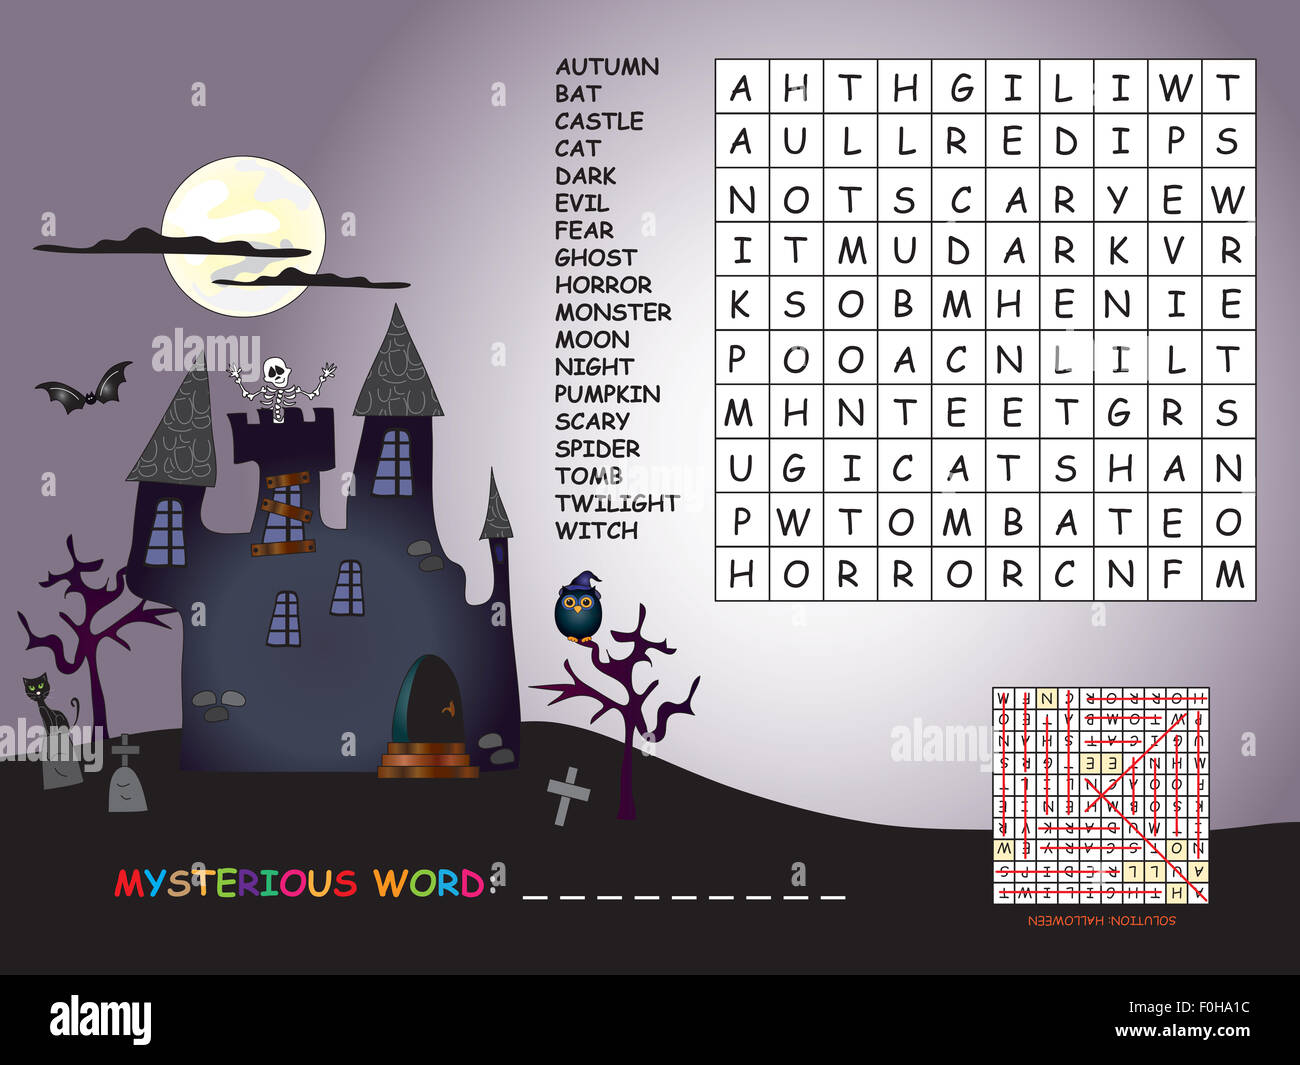 Gioco per bambini per Halloween: trovare tutte le parole (orizzontale, verticale e diagonale). Utilizzare le lettere restanti per trovare le Mystère Foto Stock